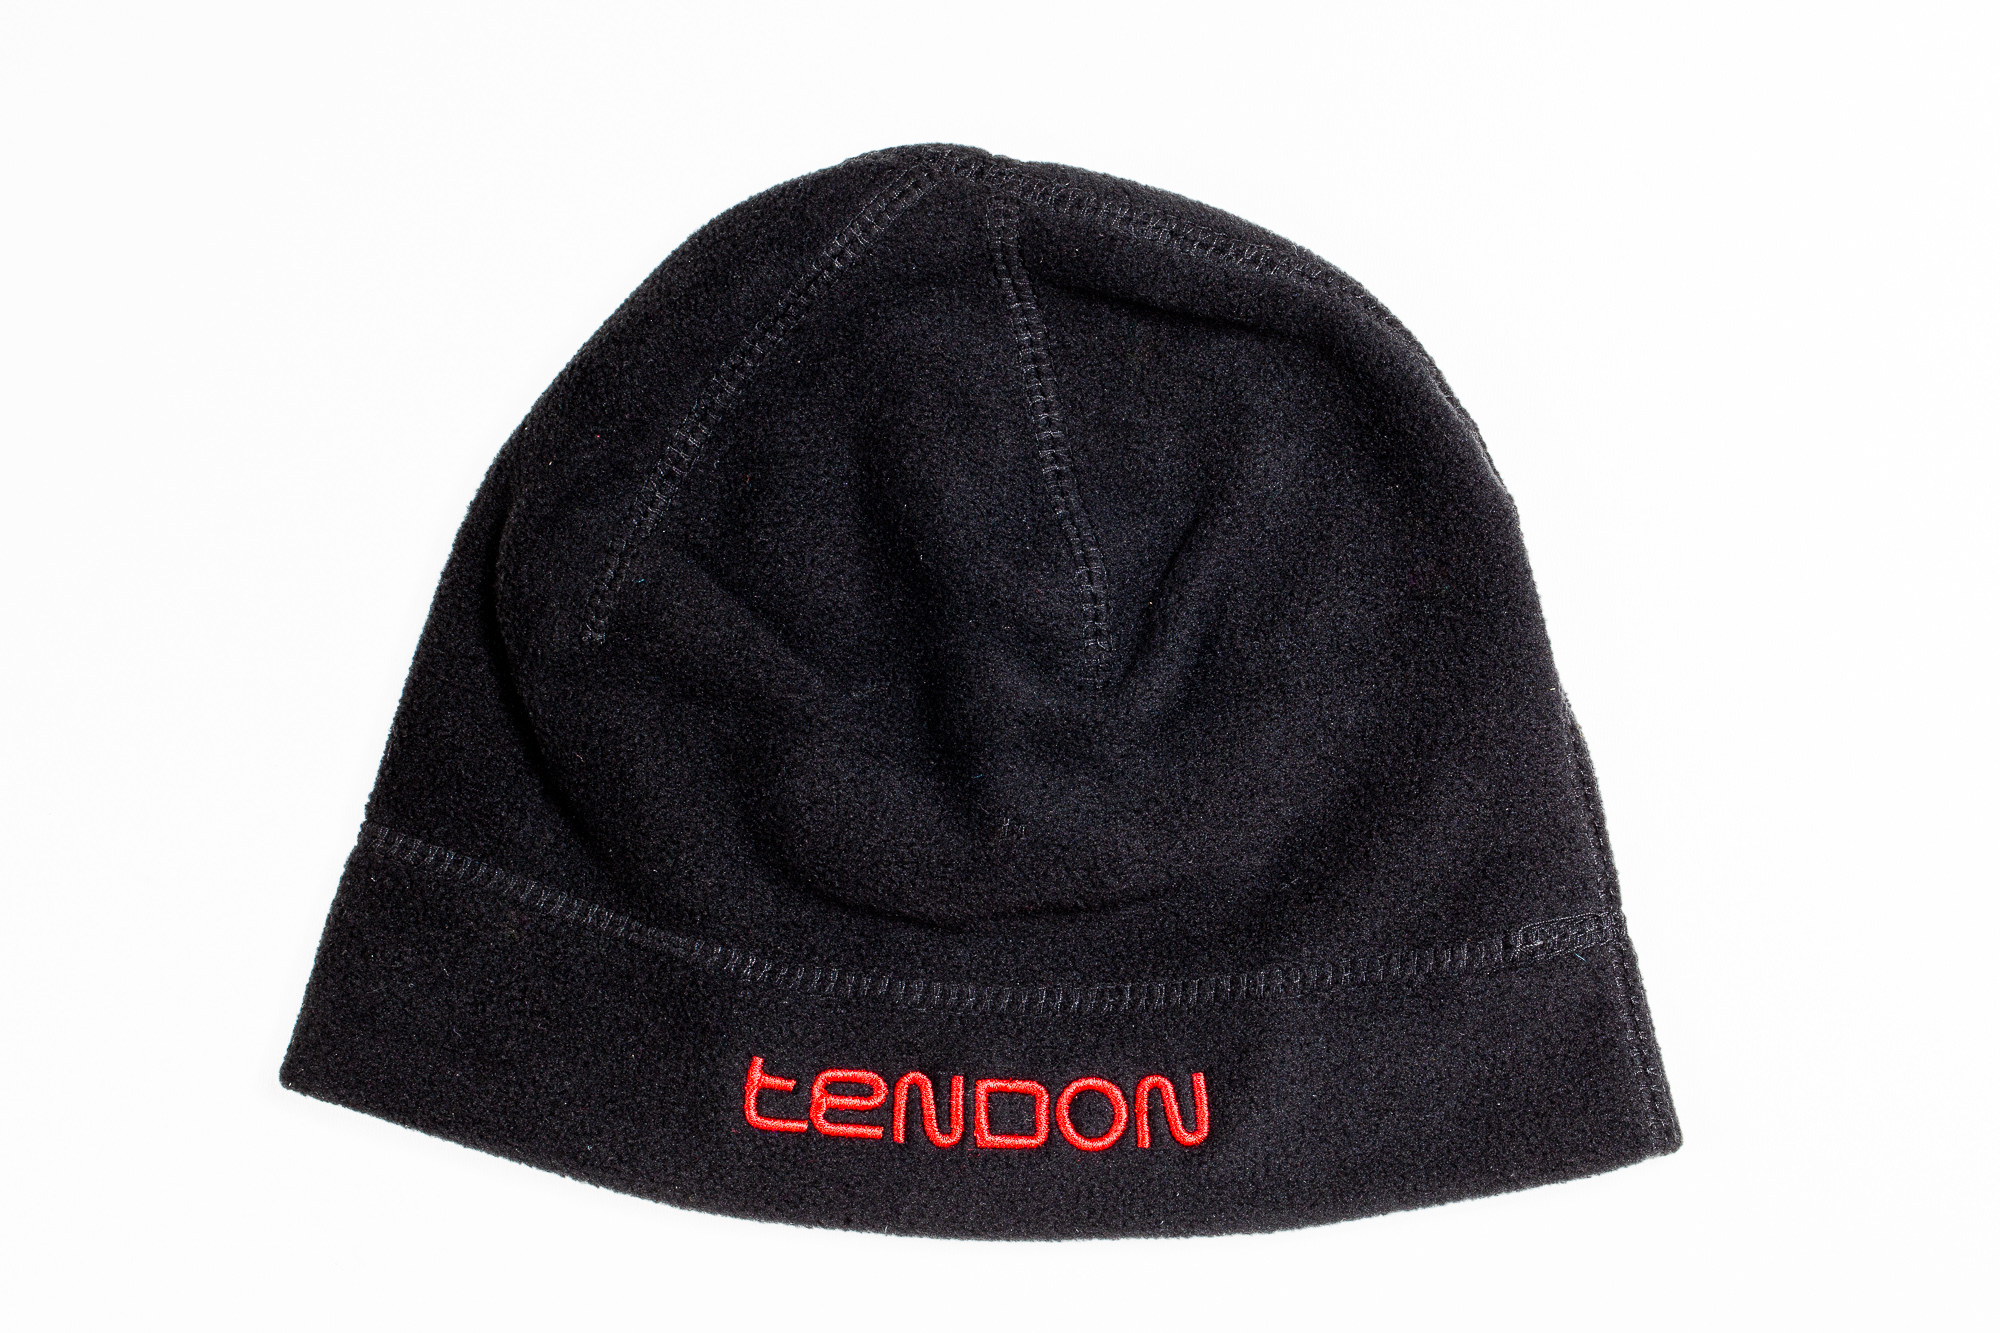 TENDON Fleece cap